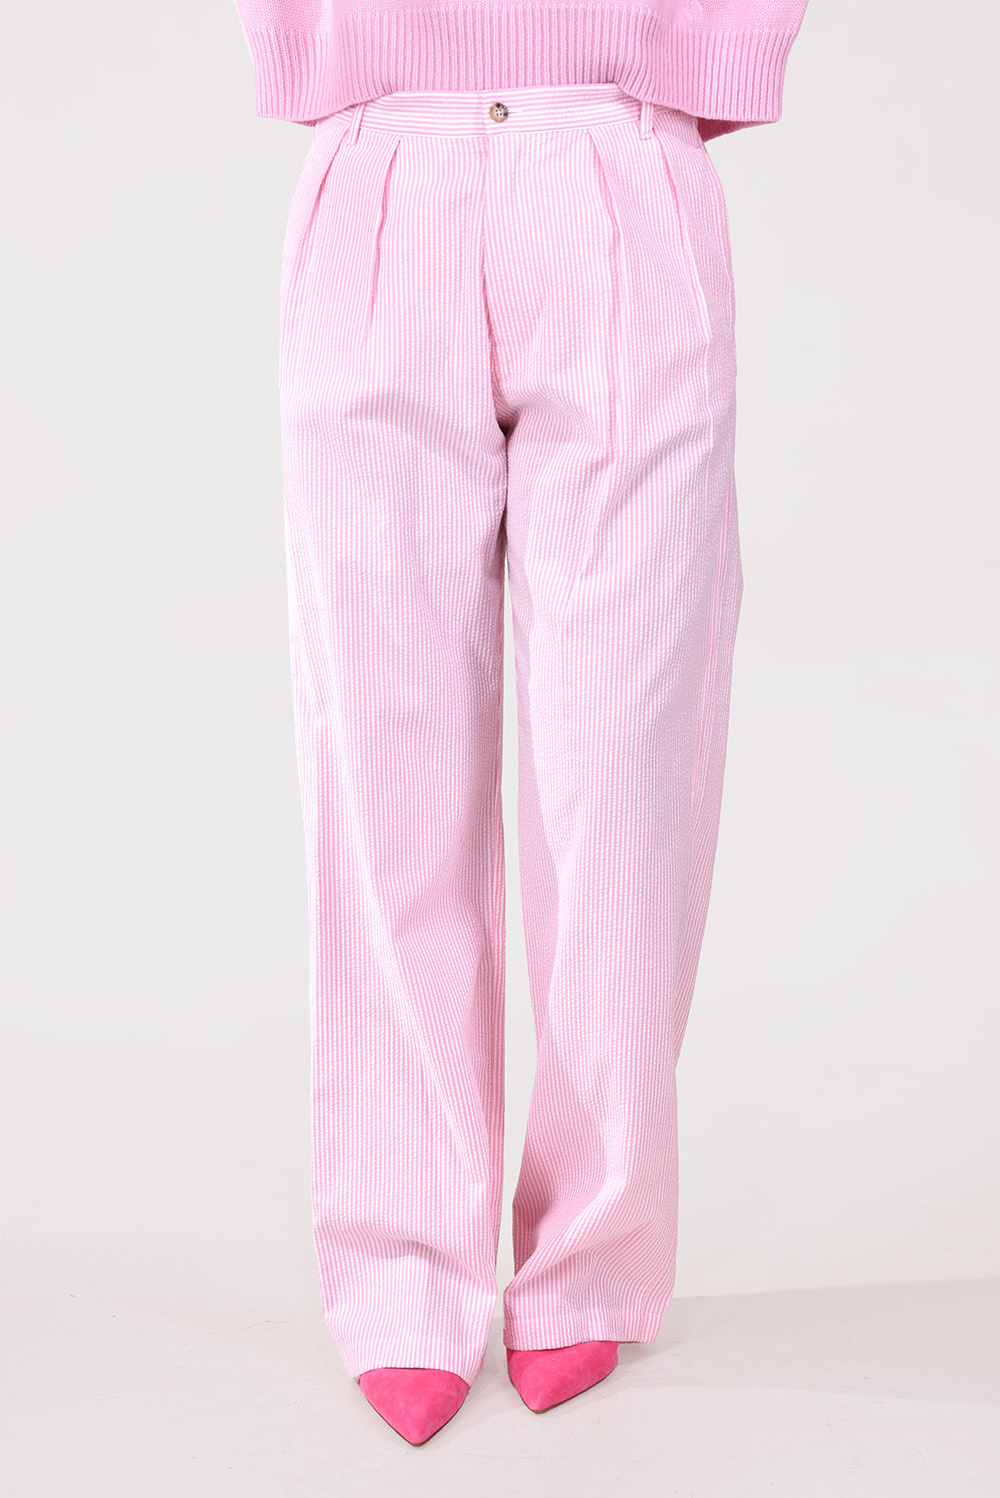 Denimist broek Double Pleat Wide Leg DSW9206-075 roze